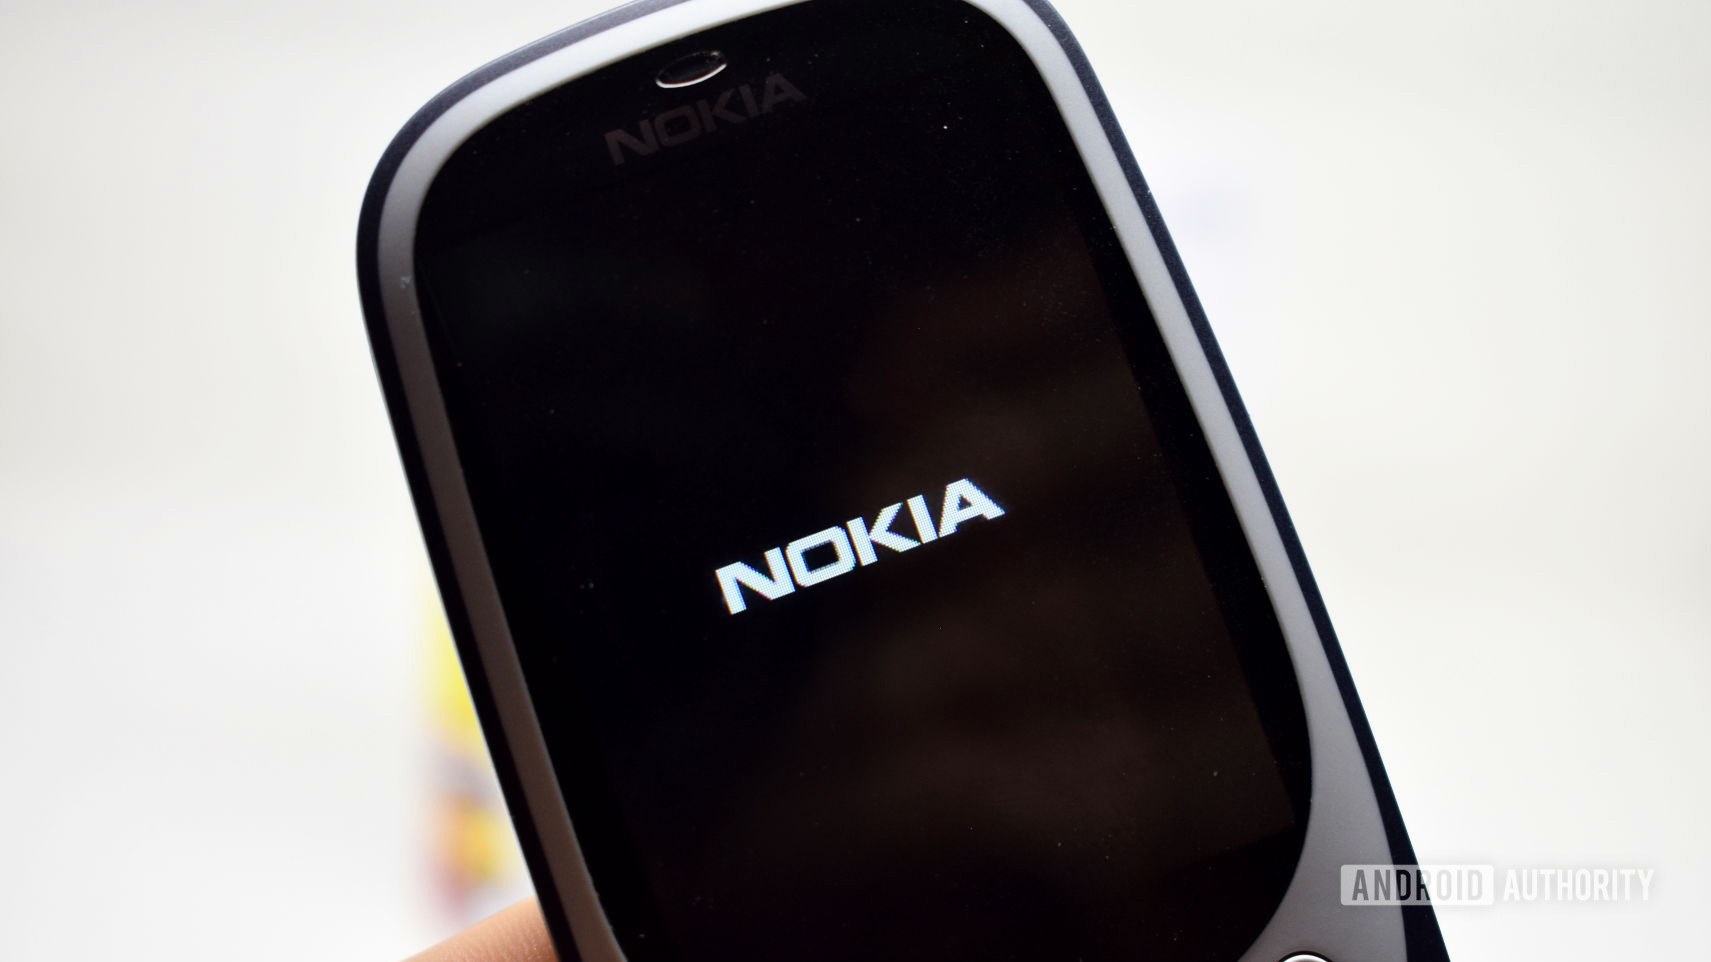 Nokia logo on the Nokia 3310.